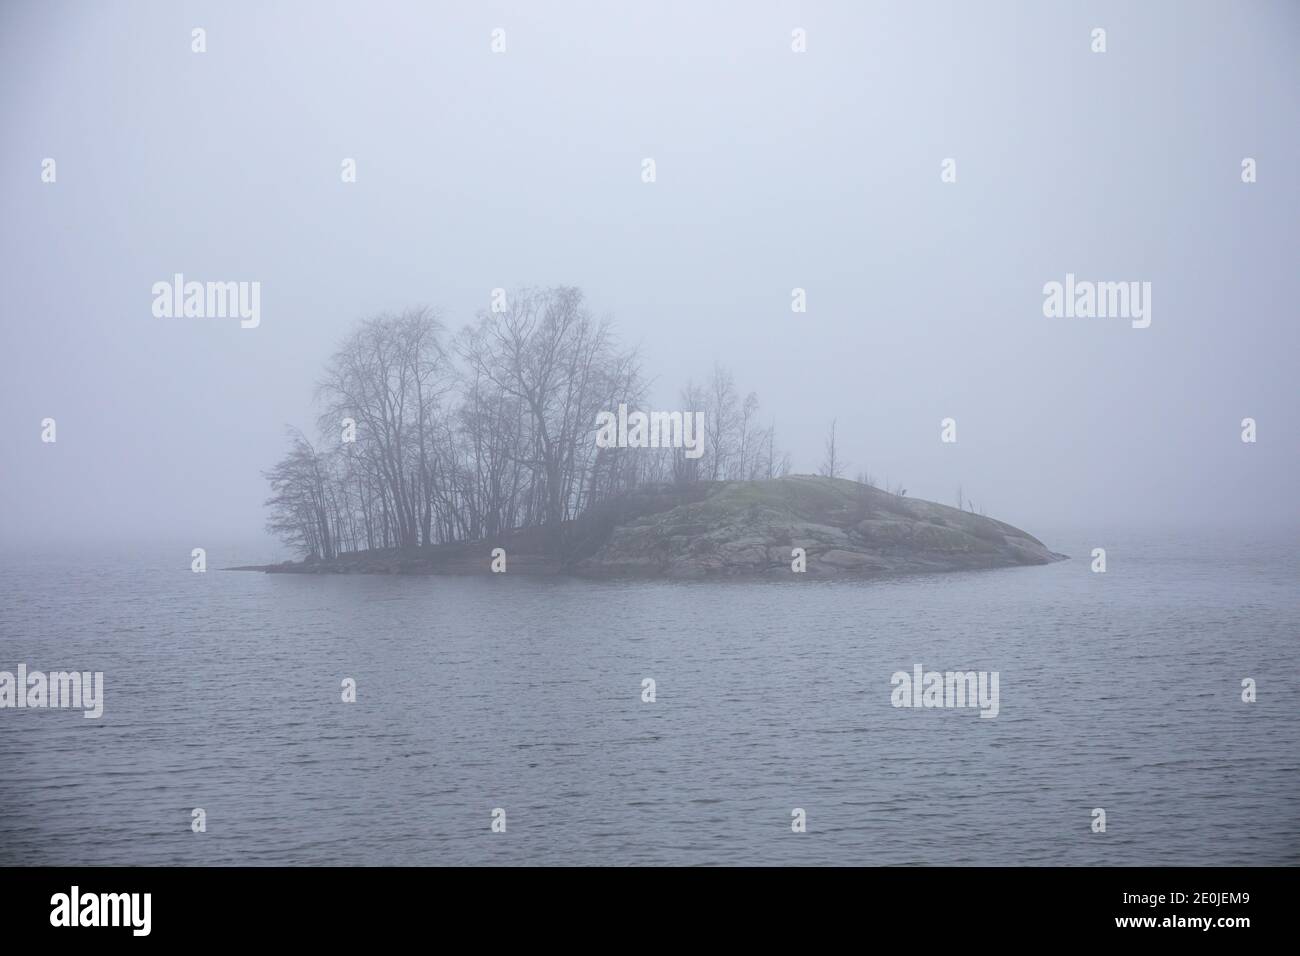 Little islet in Seurasaarensalmi on a foggy December day in Helsinki, Finland Stock Photo